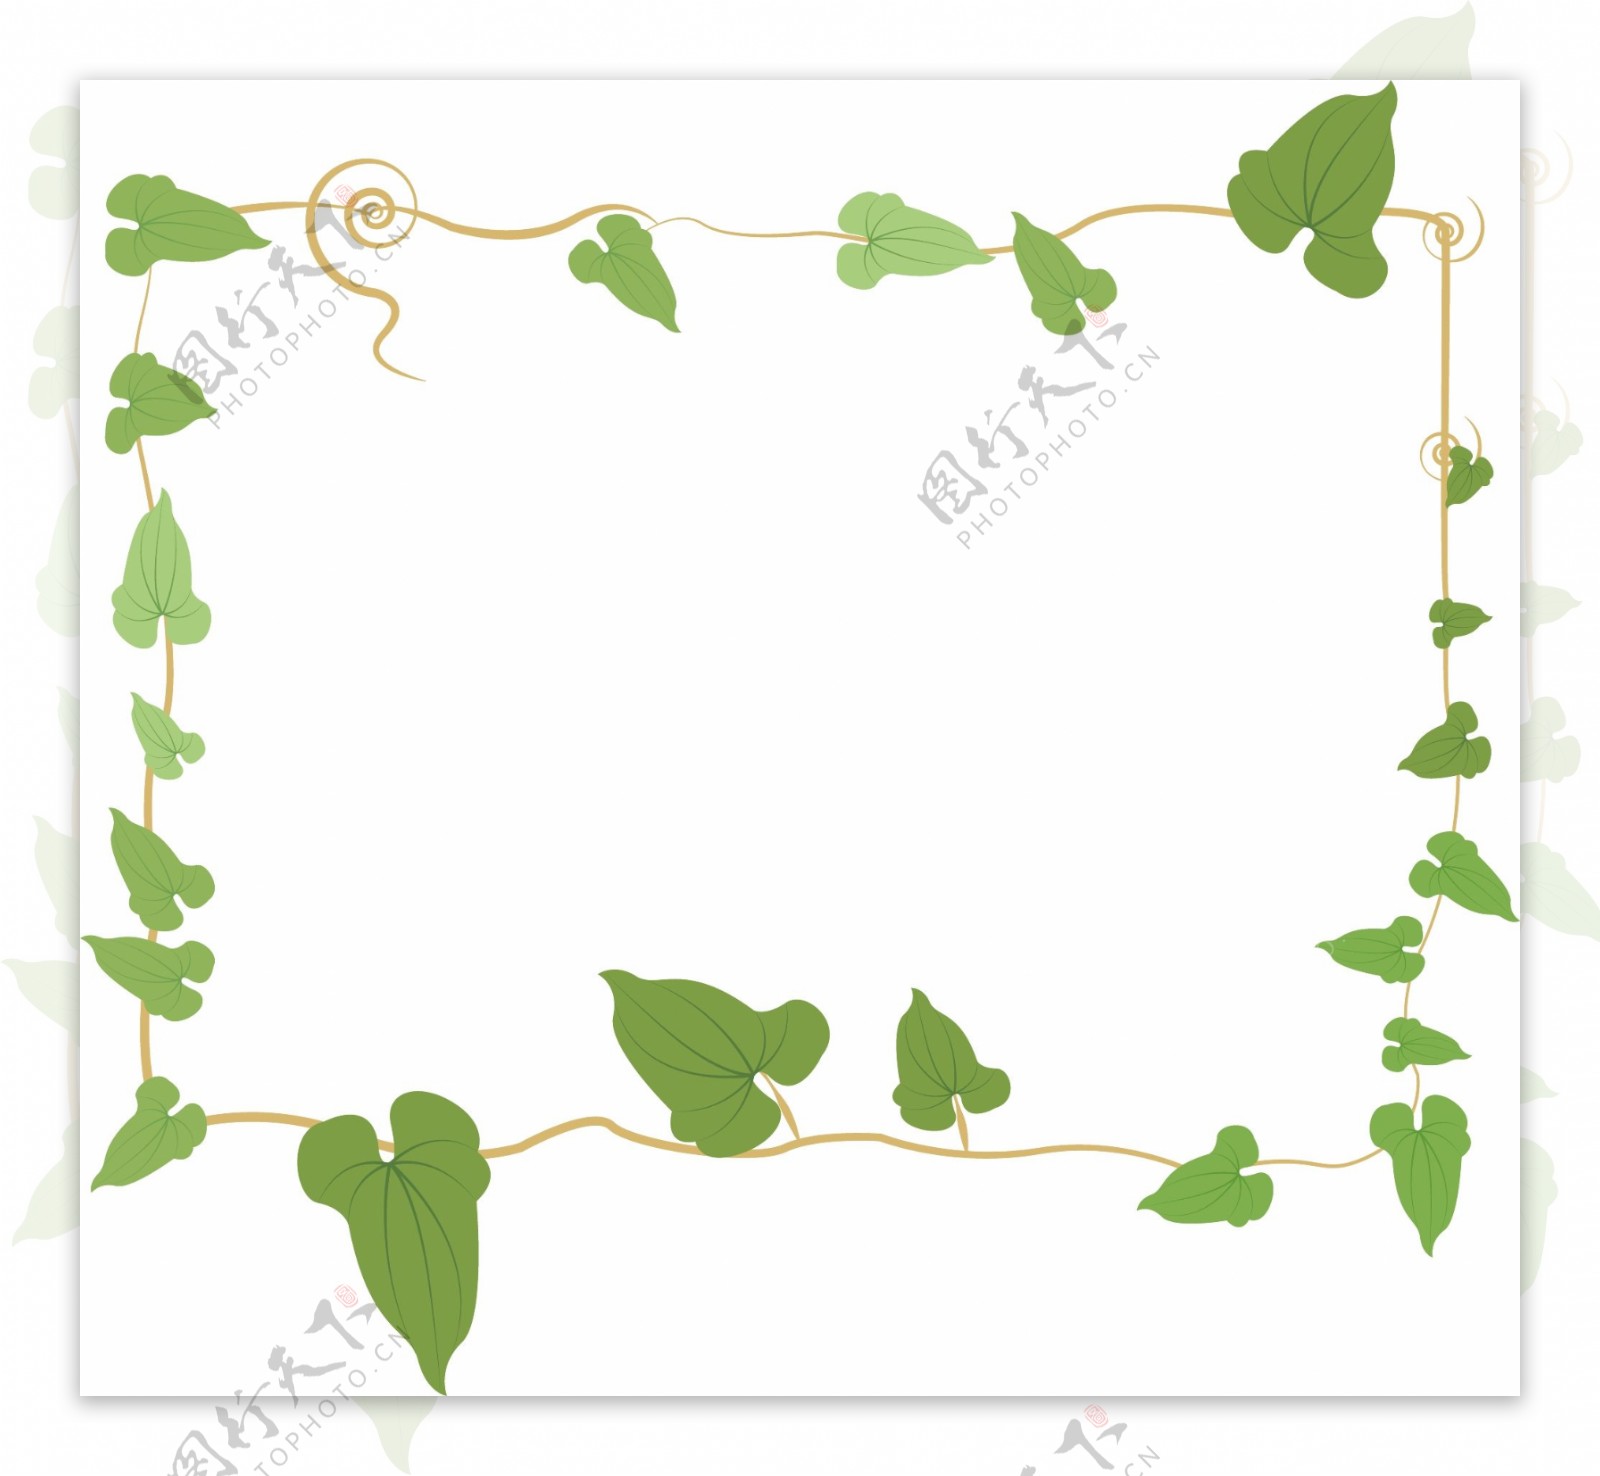 手绘清新绿色叶子藤蔓植物边框